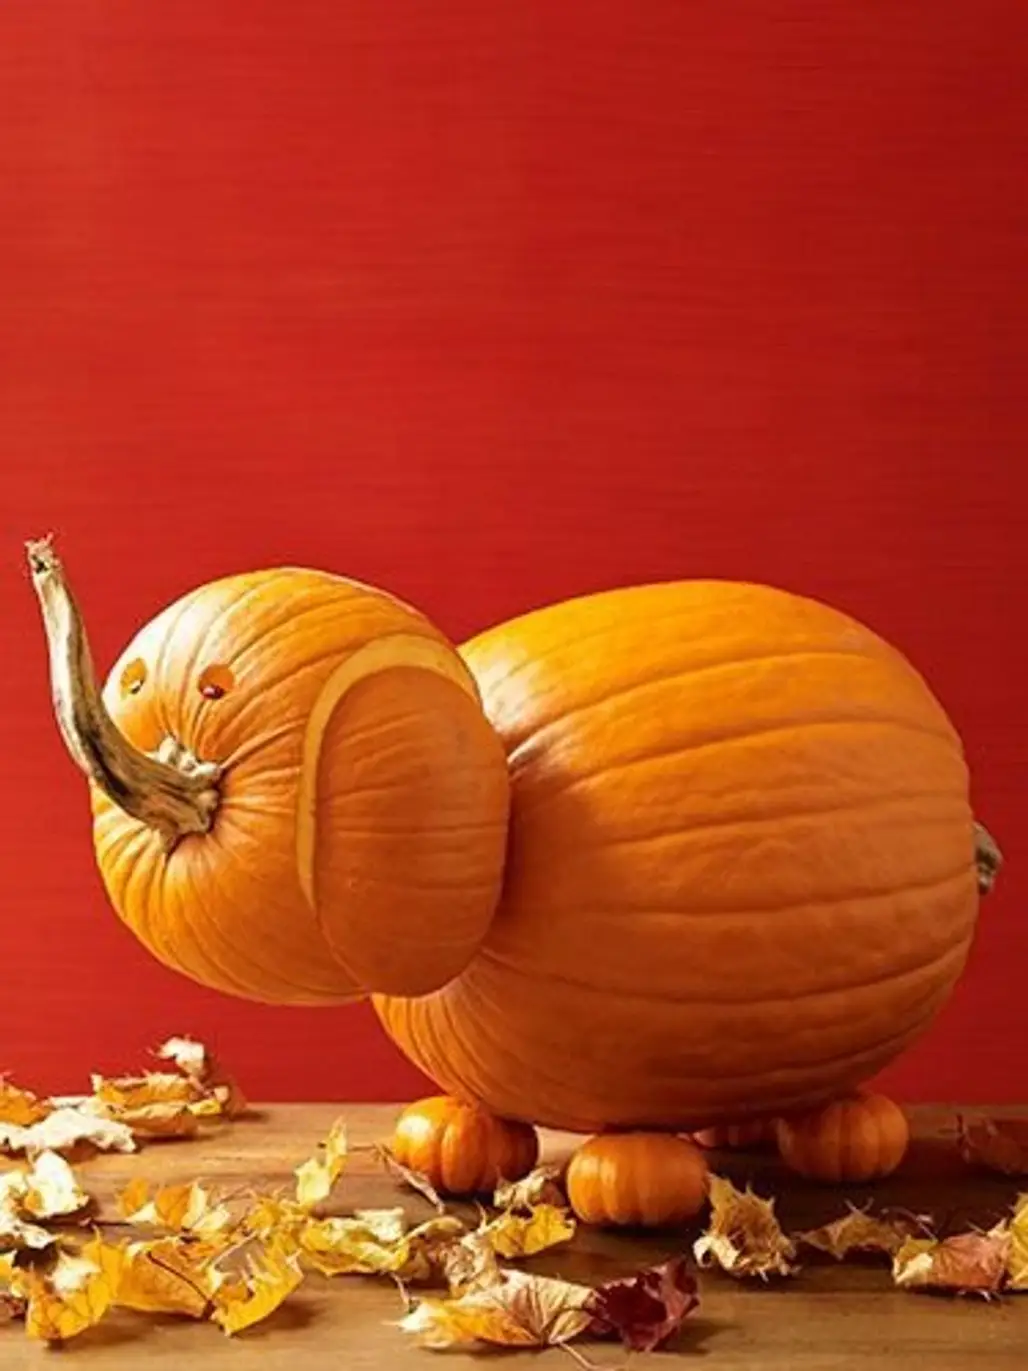 pumpkin,still life photography,winter squash,carving,calabaza,